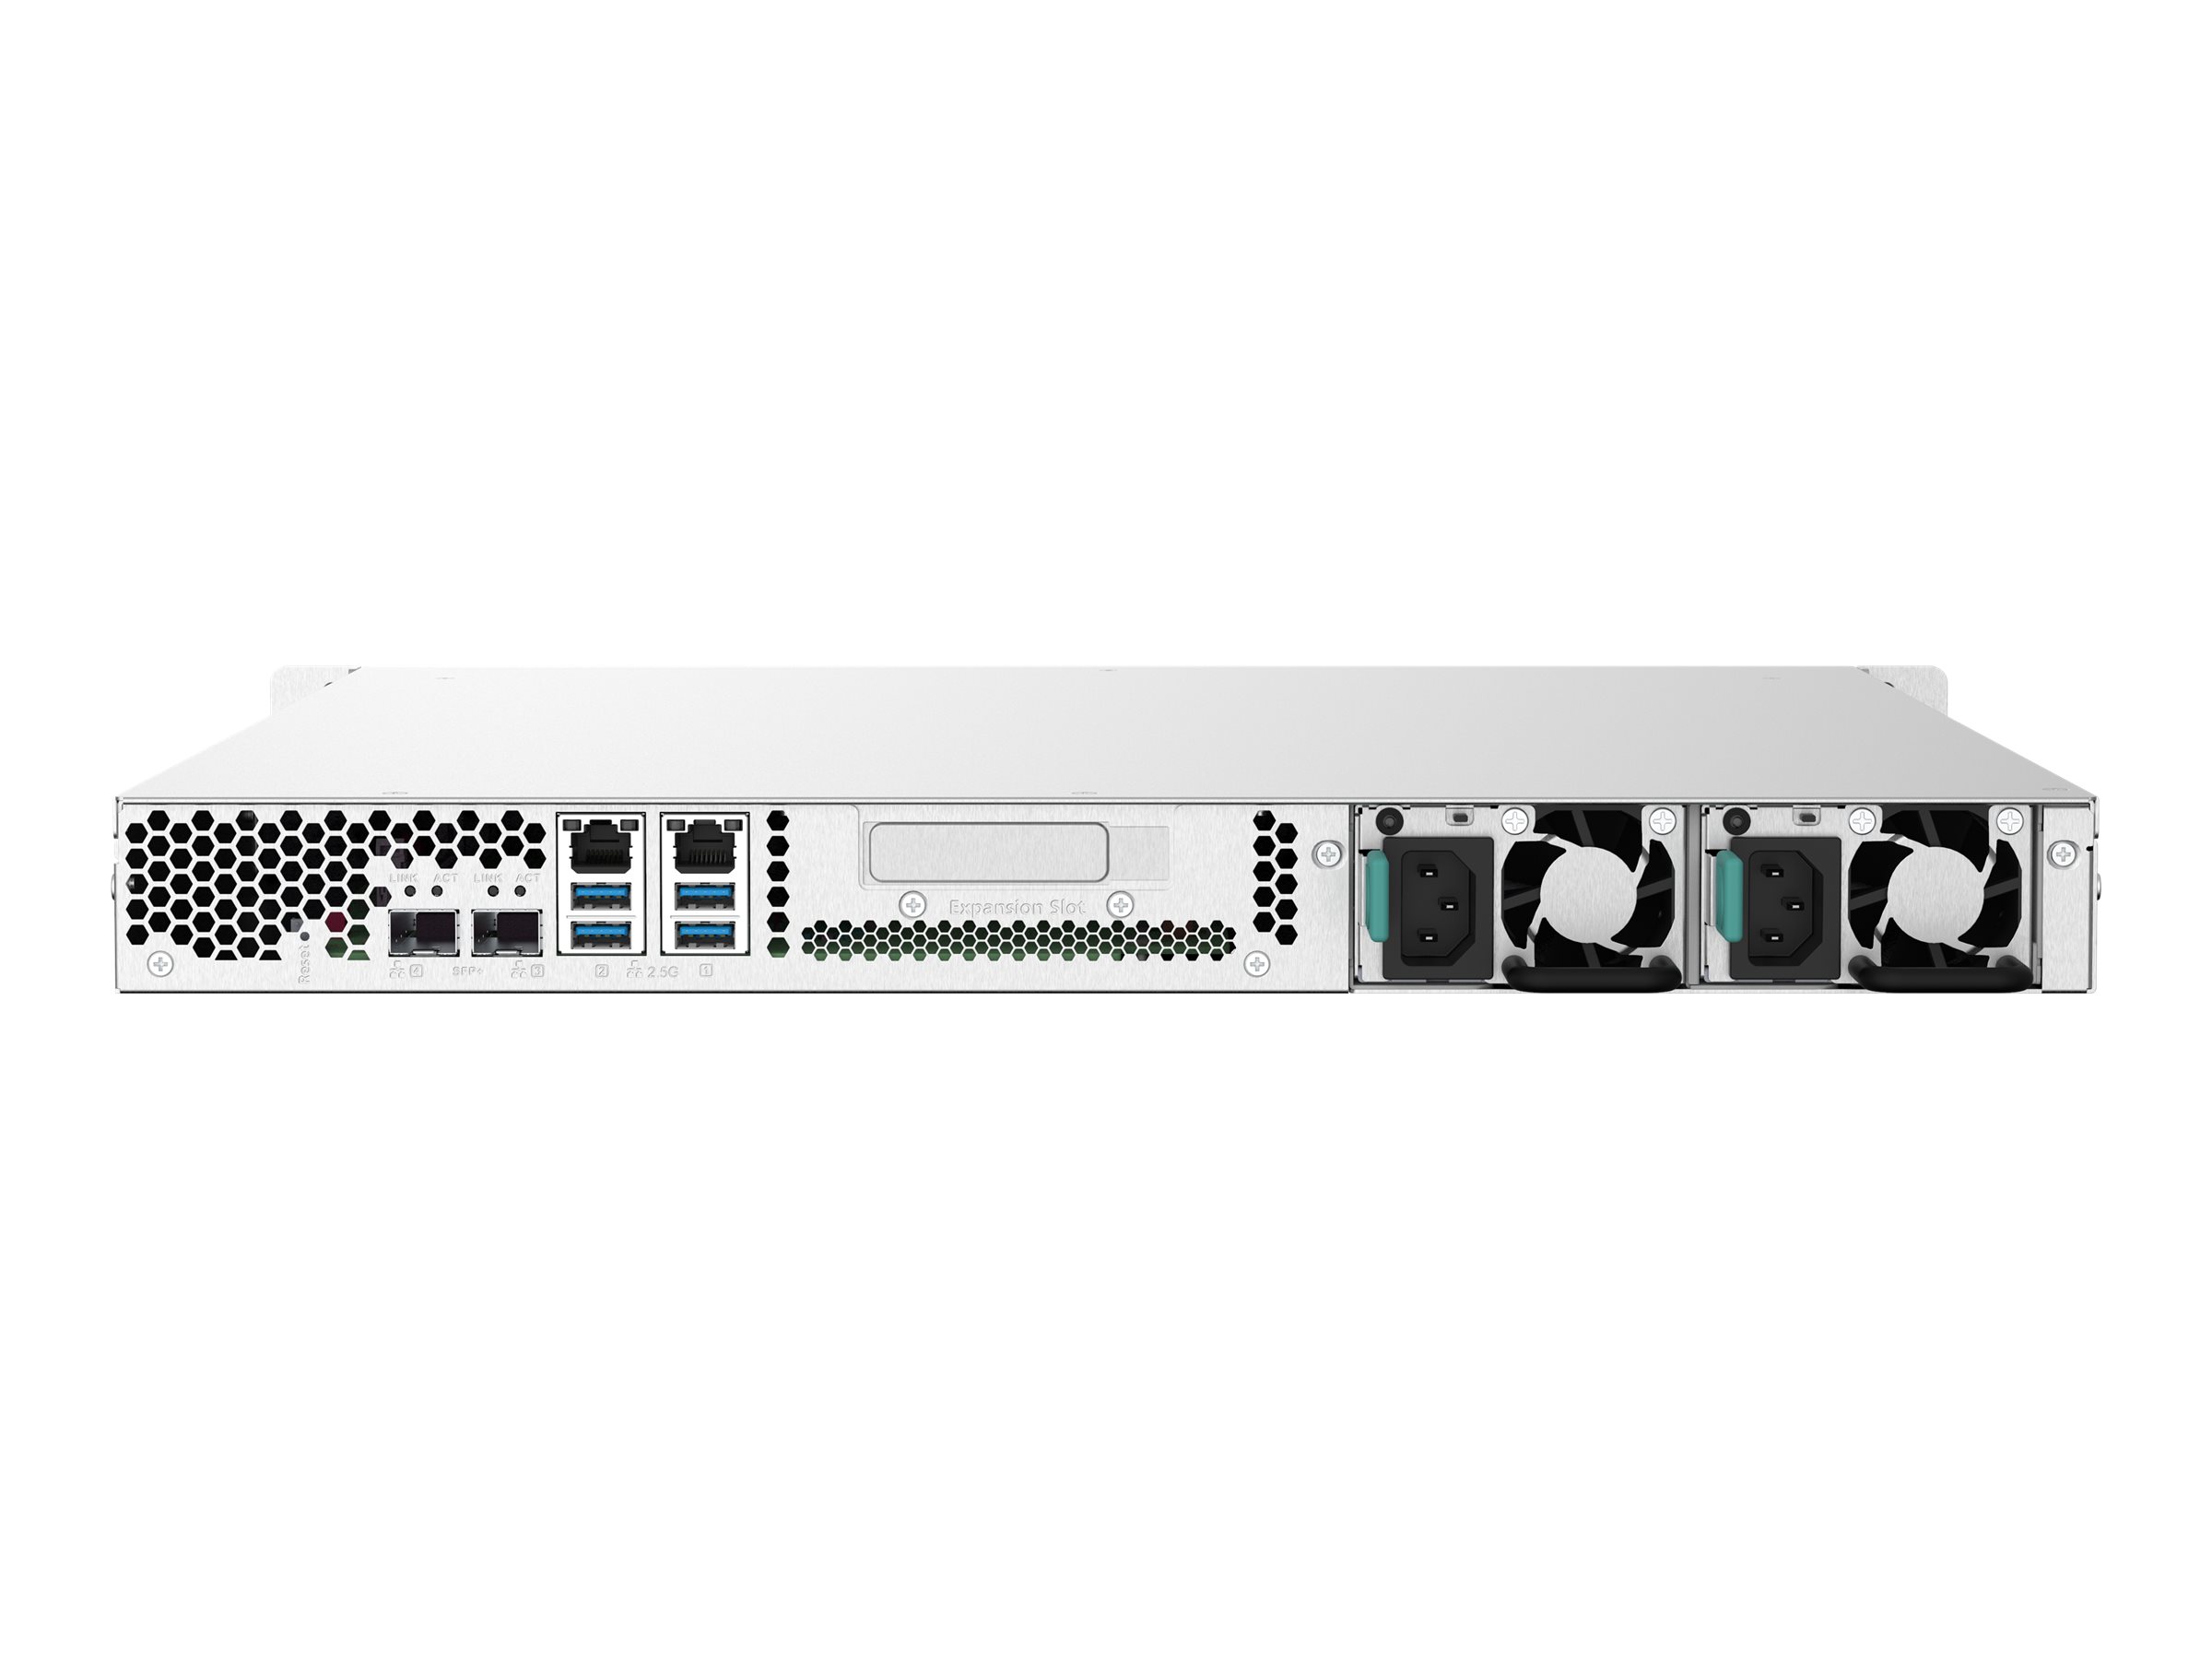 QNAP TS-432PXU-RP - Serveur NAS - 4 Baies - rack-montable - SATA 6Gb/s - RAID RAID 0, 1, 5, 6, 10, JBOD - RAM 2 Go - Gigabit Ethernet / 2.5 Gigabit Ethernet / 10 Gigabit Ethernet - iSCSI support - 1U - TS-432PXU-RP-2G - NAS